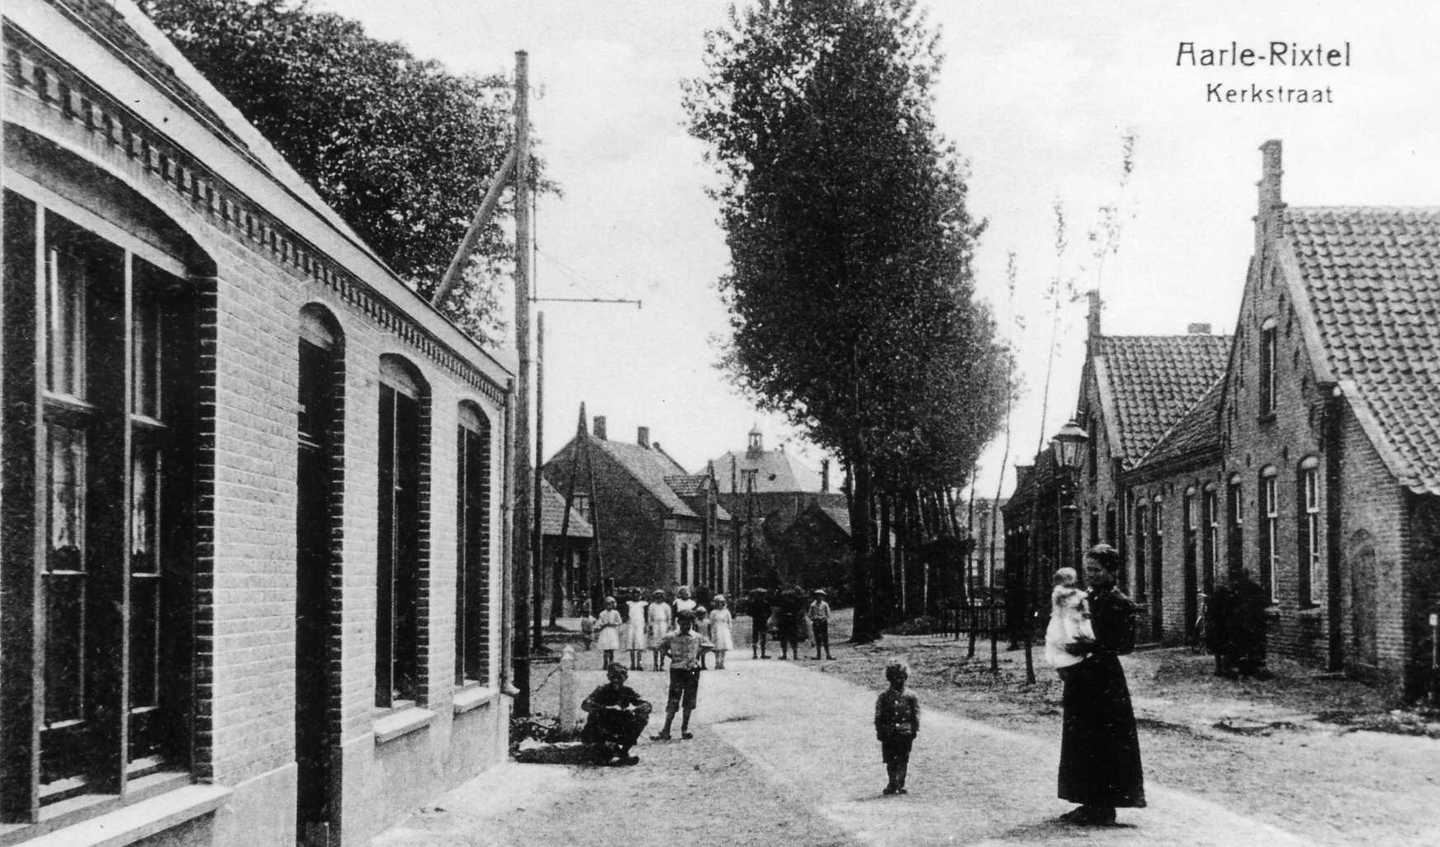 De Kerkstraat in Aarle-Rixtel (vroeger)